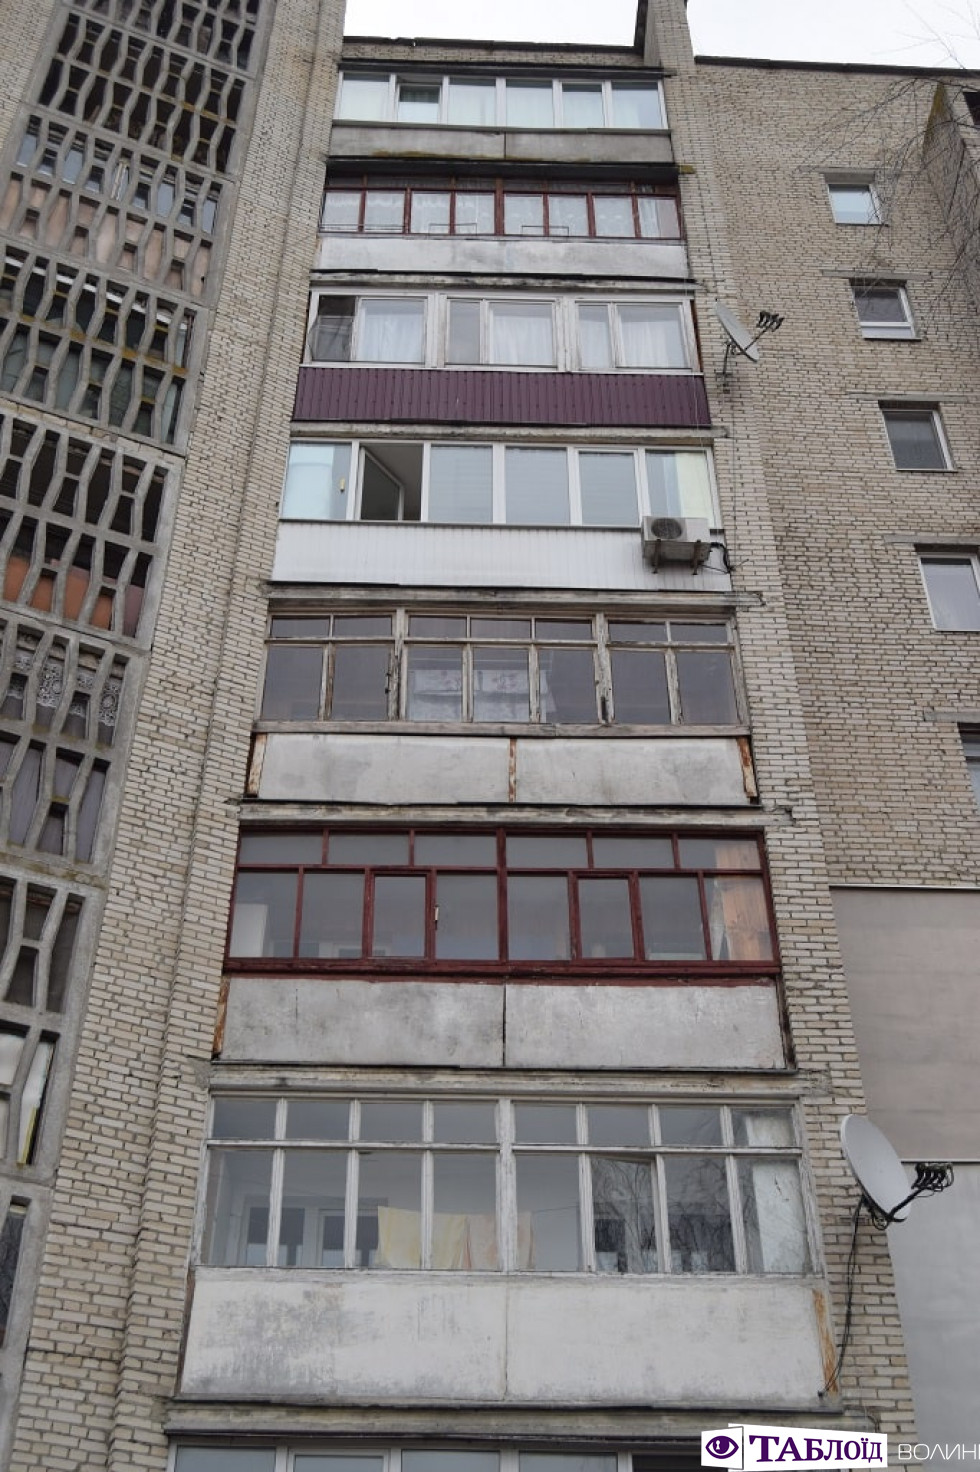 Балкони Луцька: вулиця Євгена Коновальця